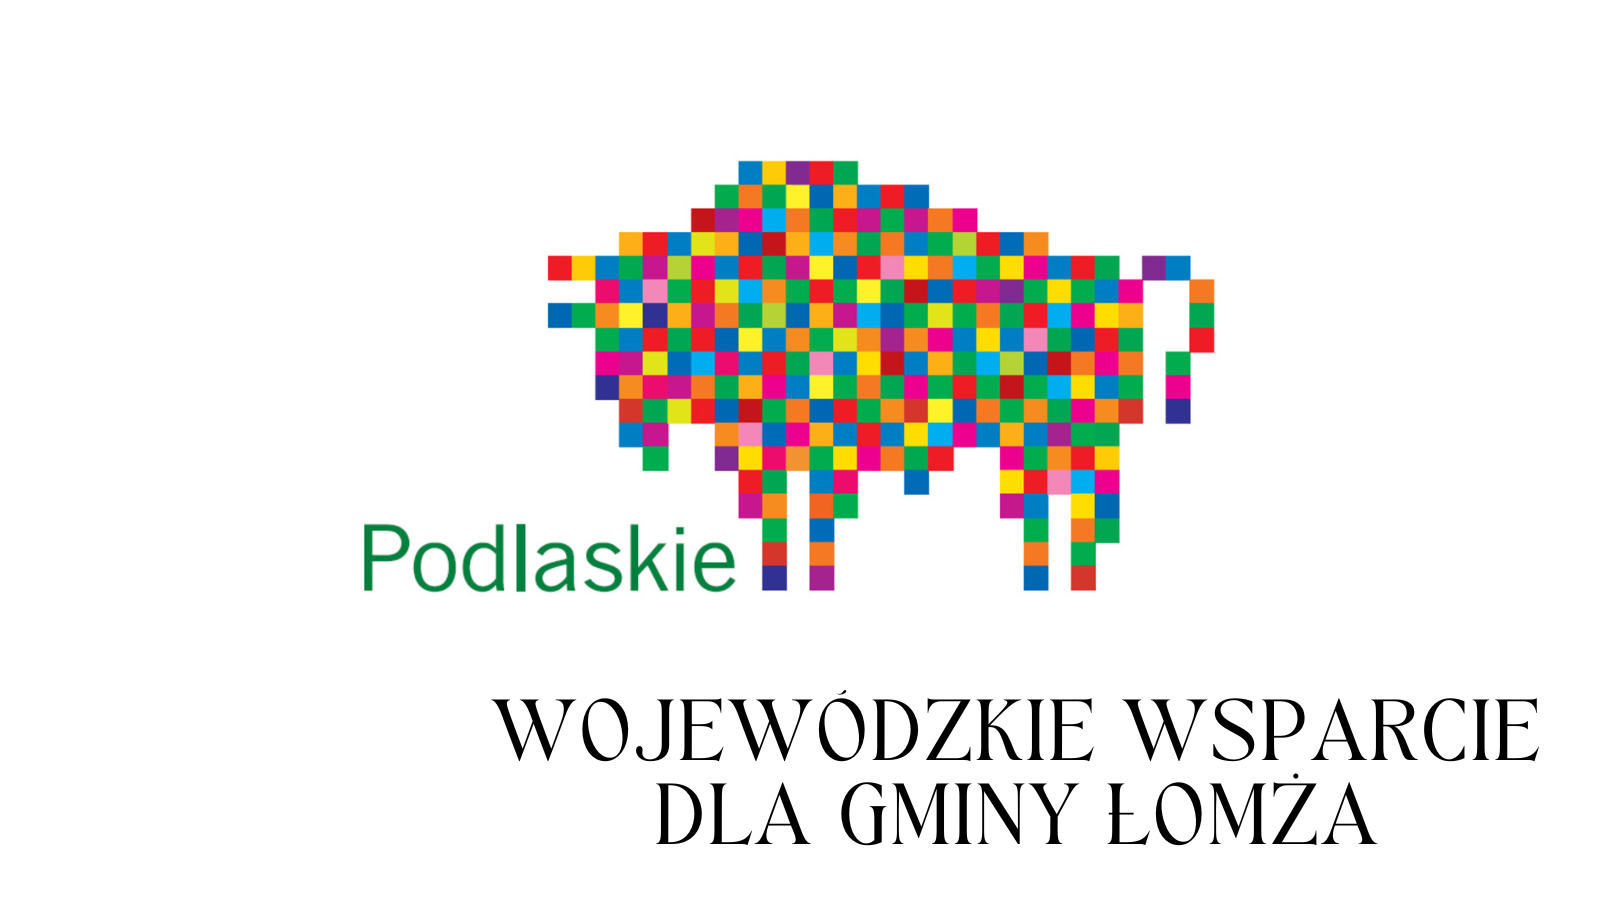 Zdjęcie do wiadomości Wojewódzkie wsparcie dla Gminy Łomża